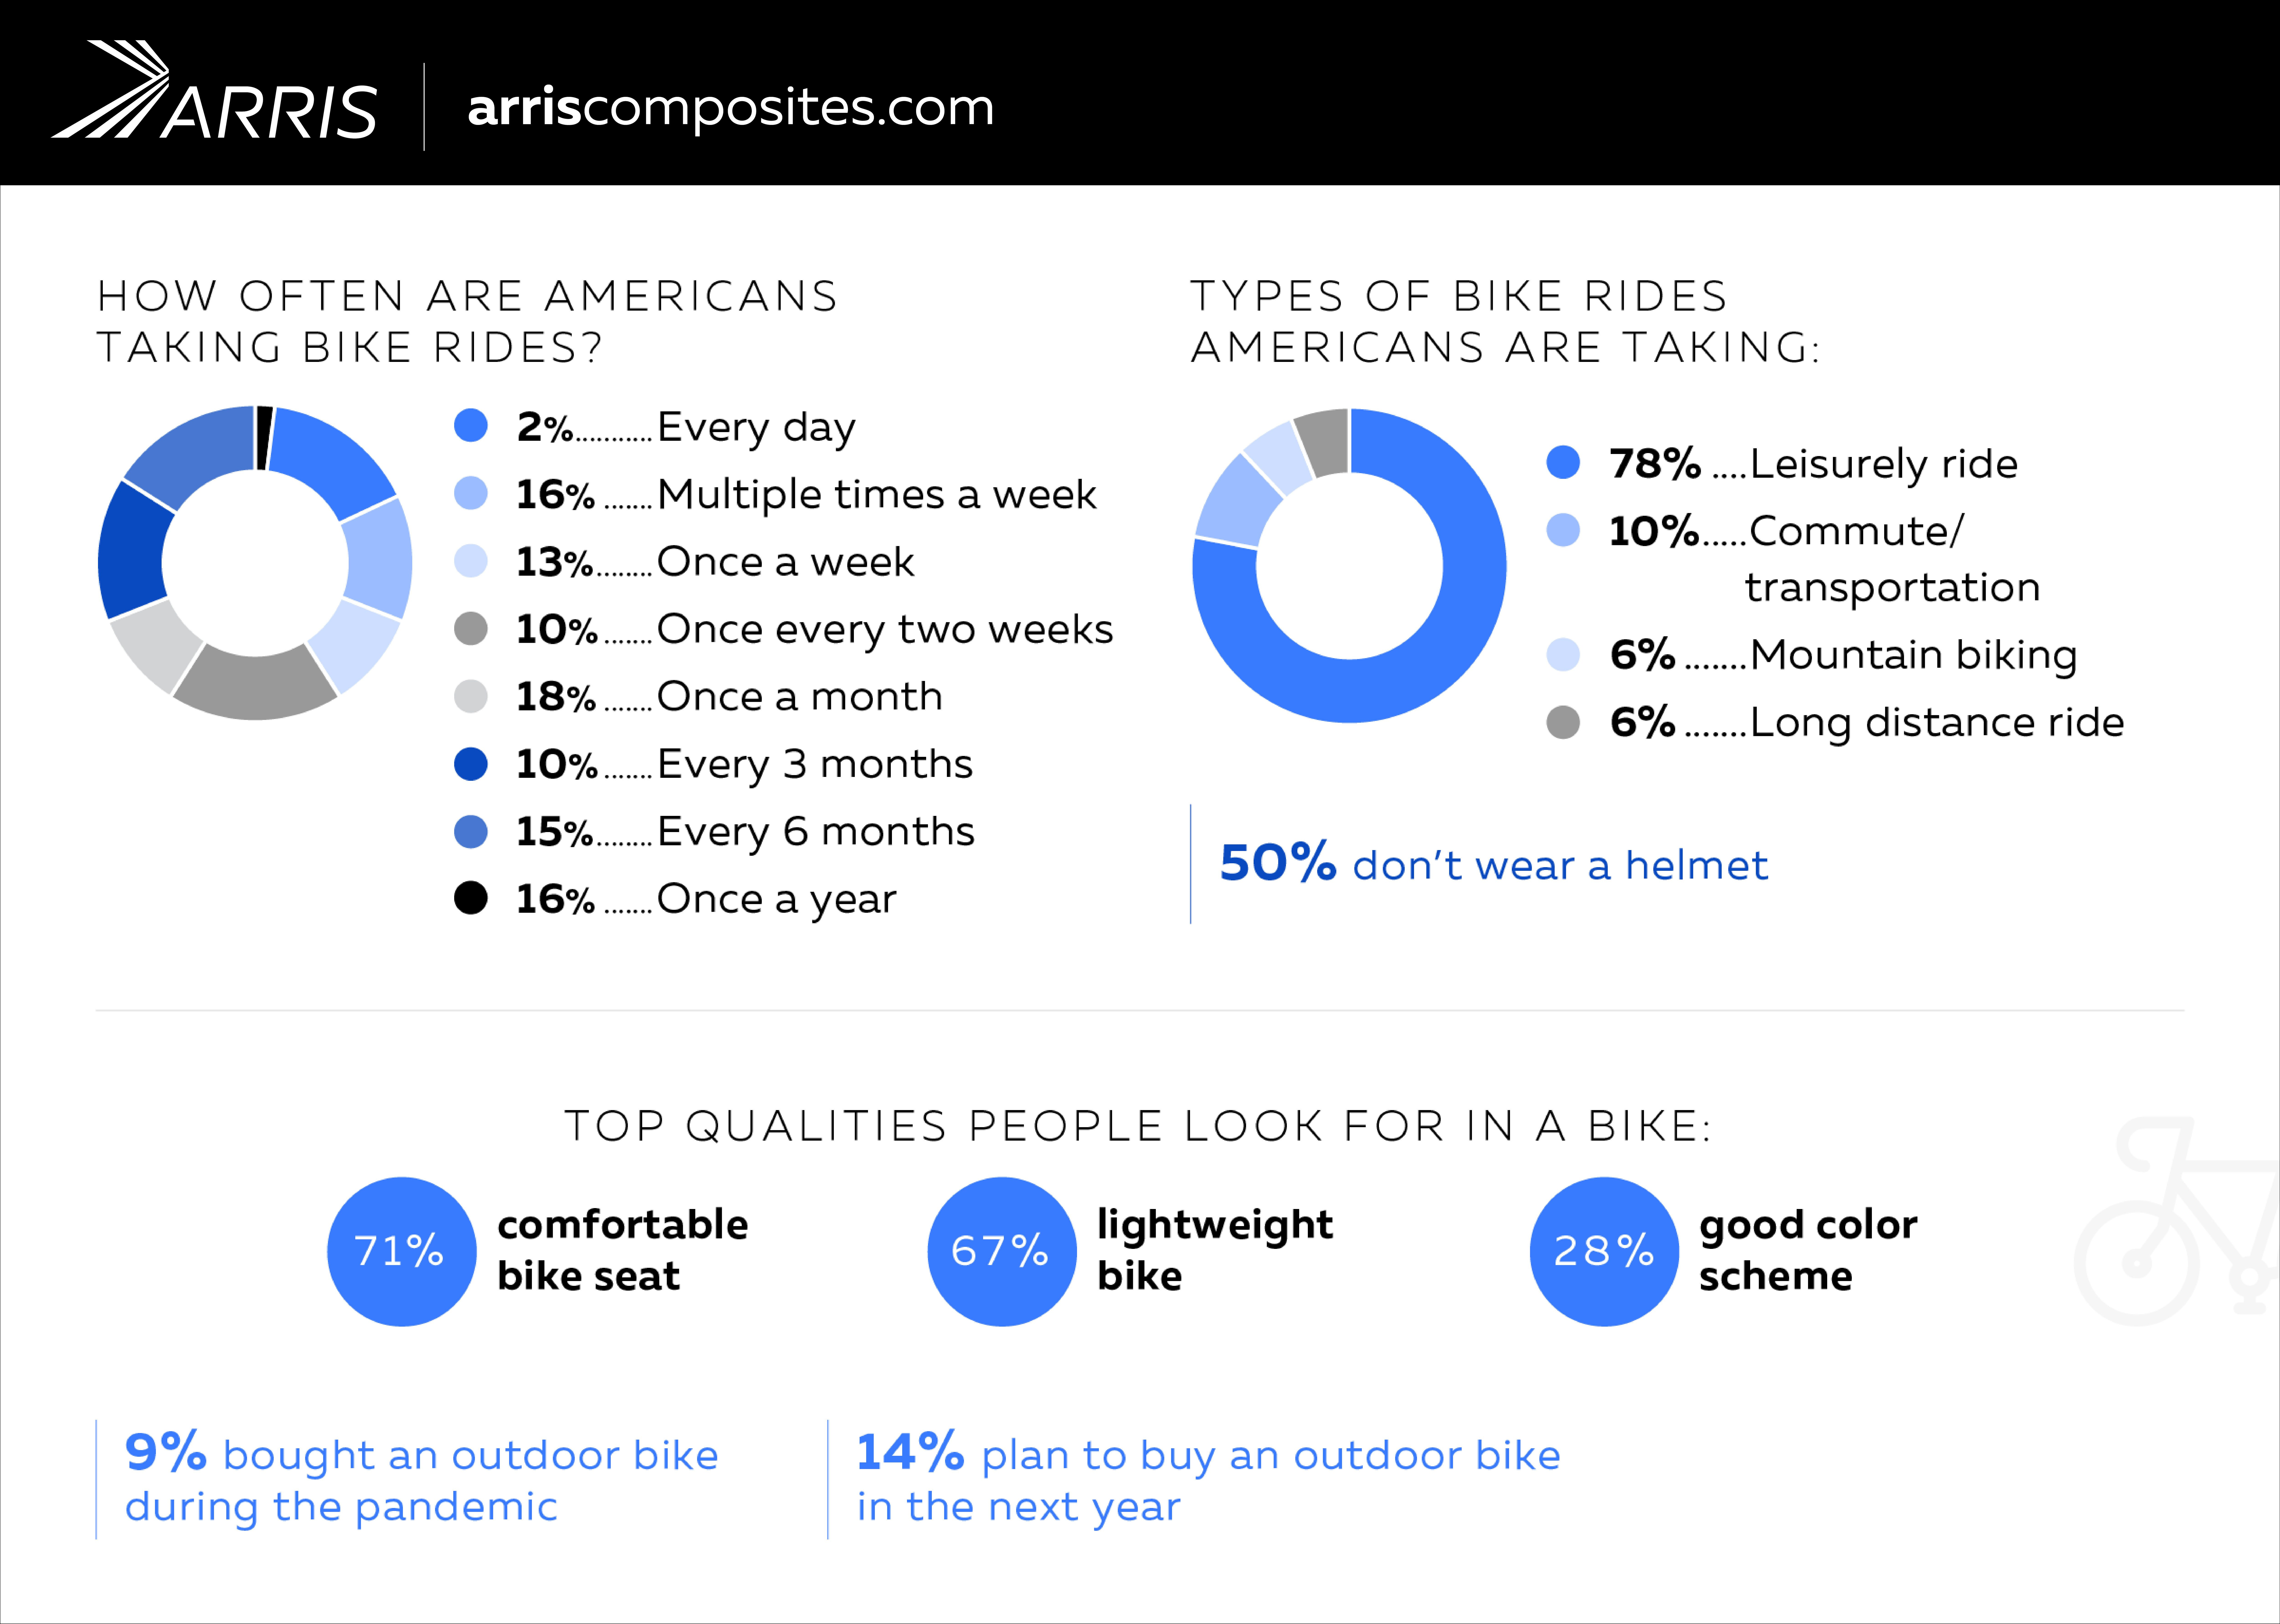 Outdoor Biking Habits Across the U.S.